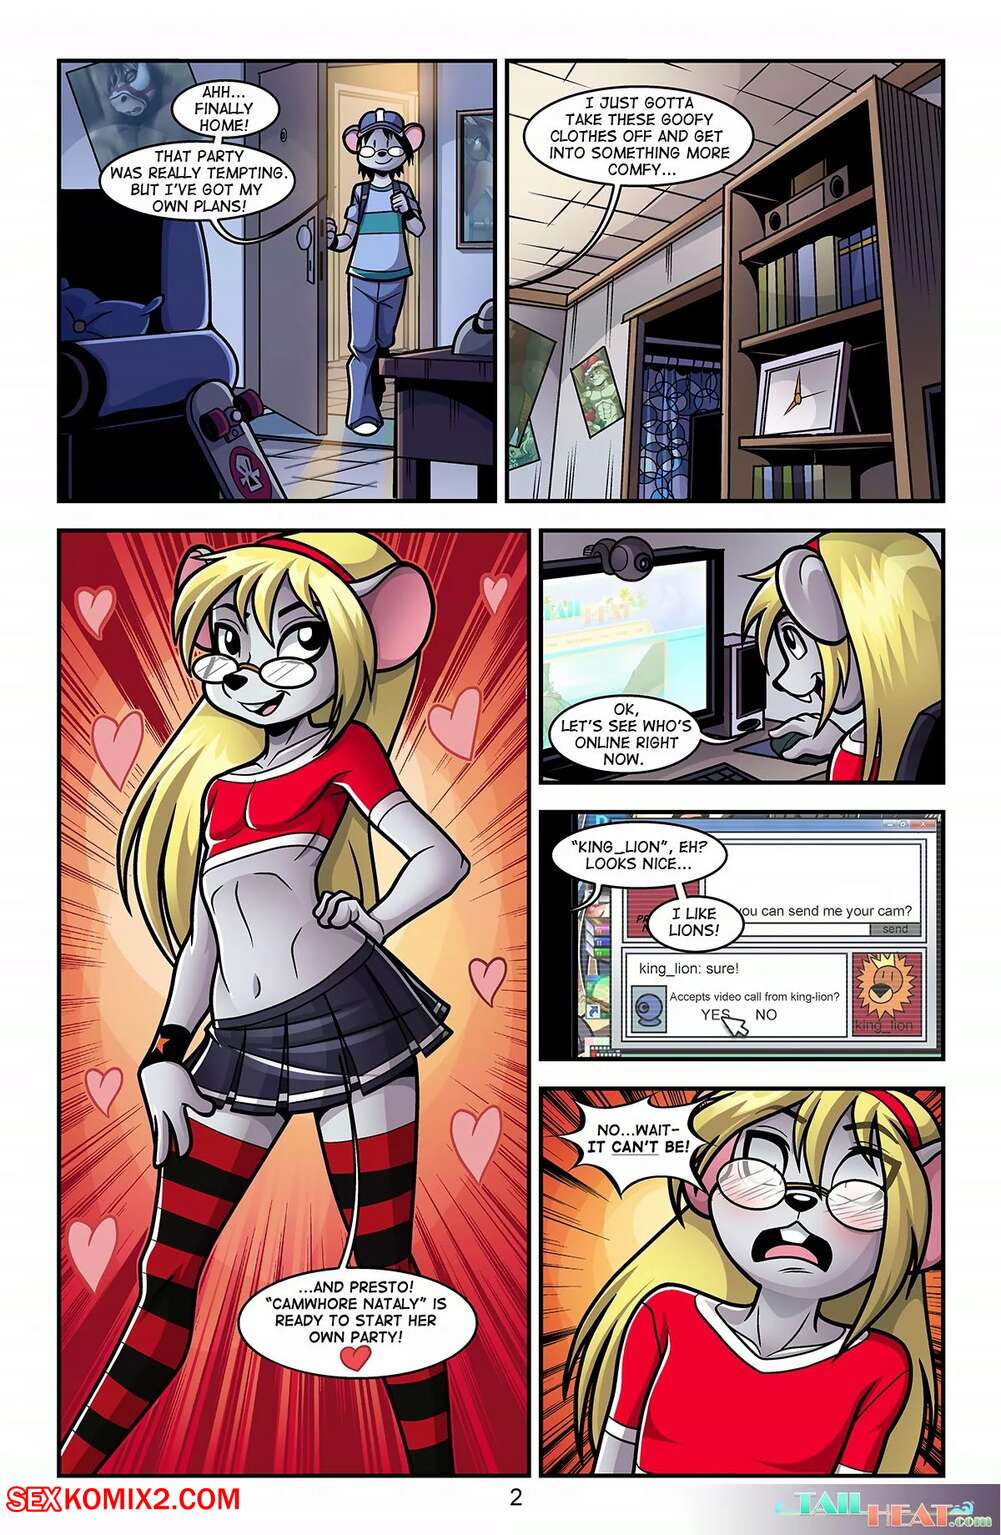 âœ…ï¸ Porn comic Camwhore. Chapter 1. Linno. Sex comic busty beauty blonde | Porn  comics in English for adults only | sexkomix2.com